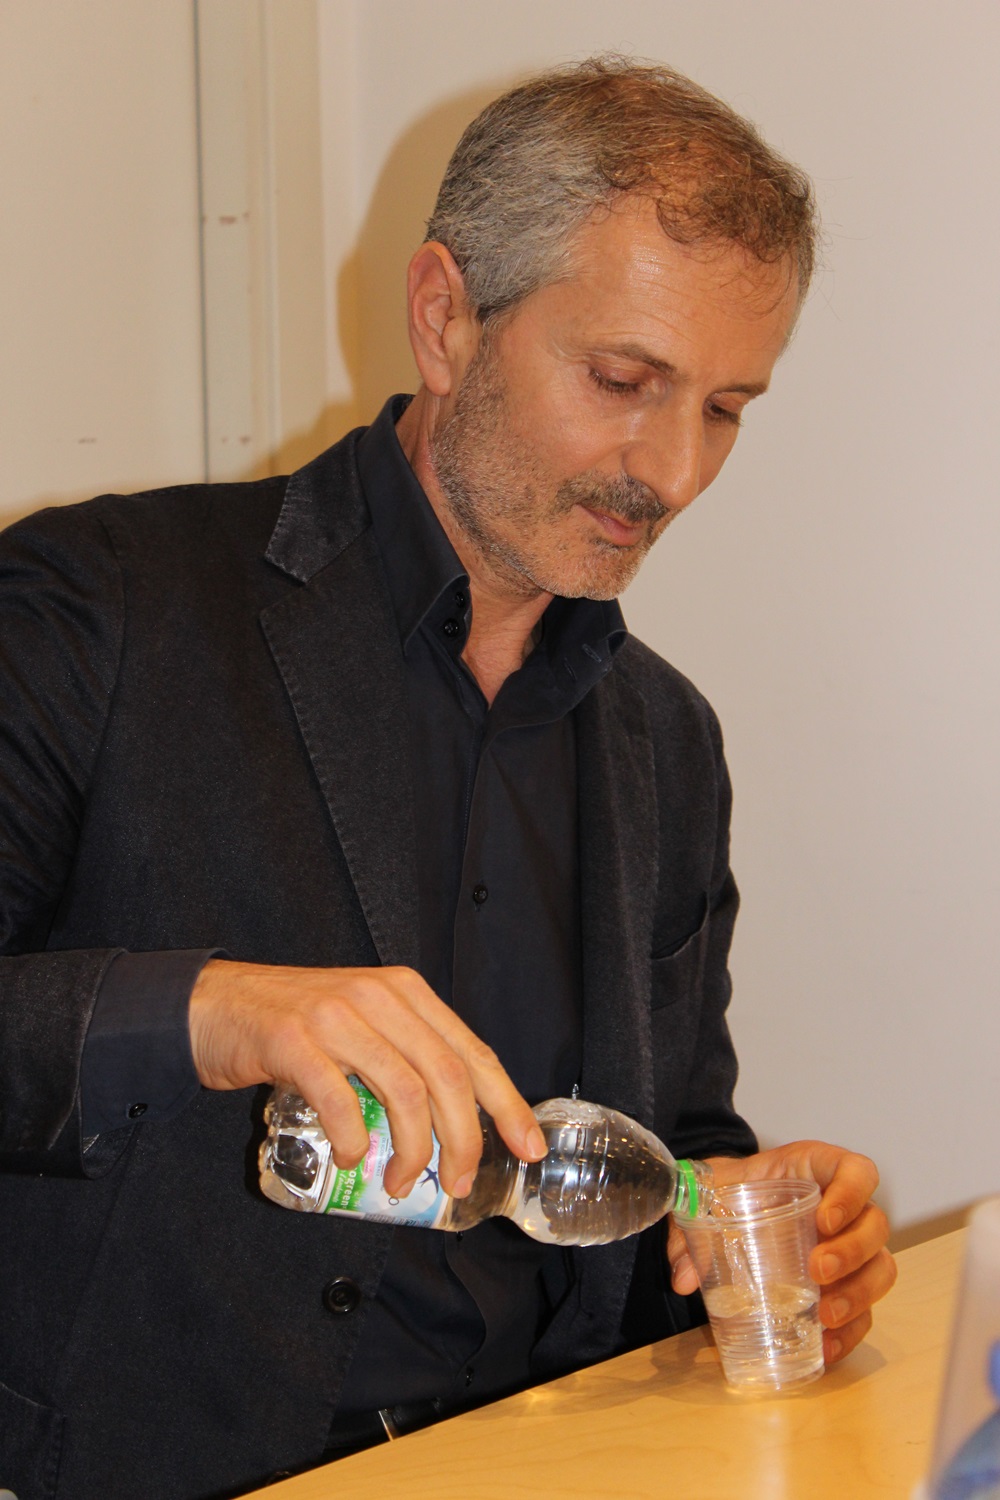 Gianrico Carofiglio